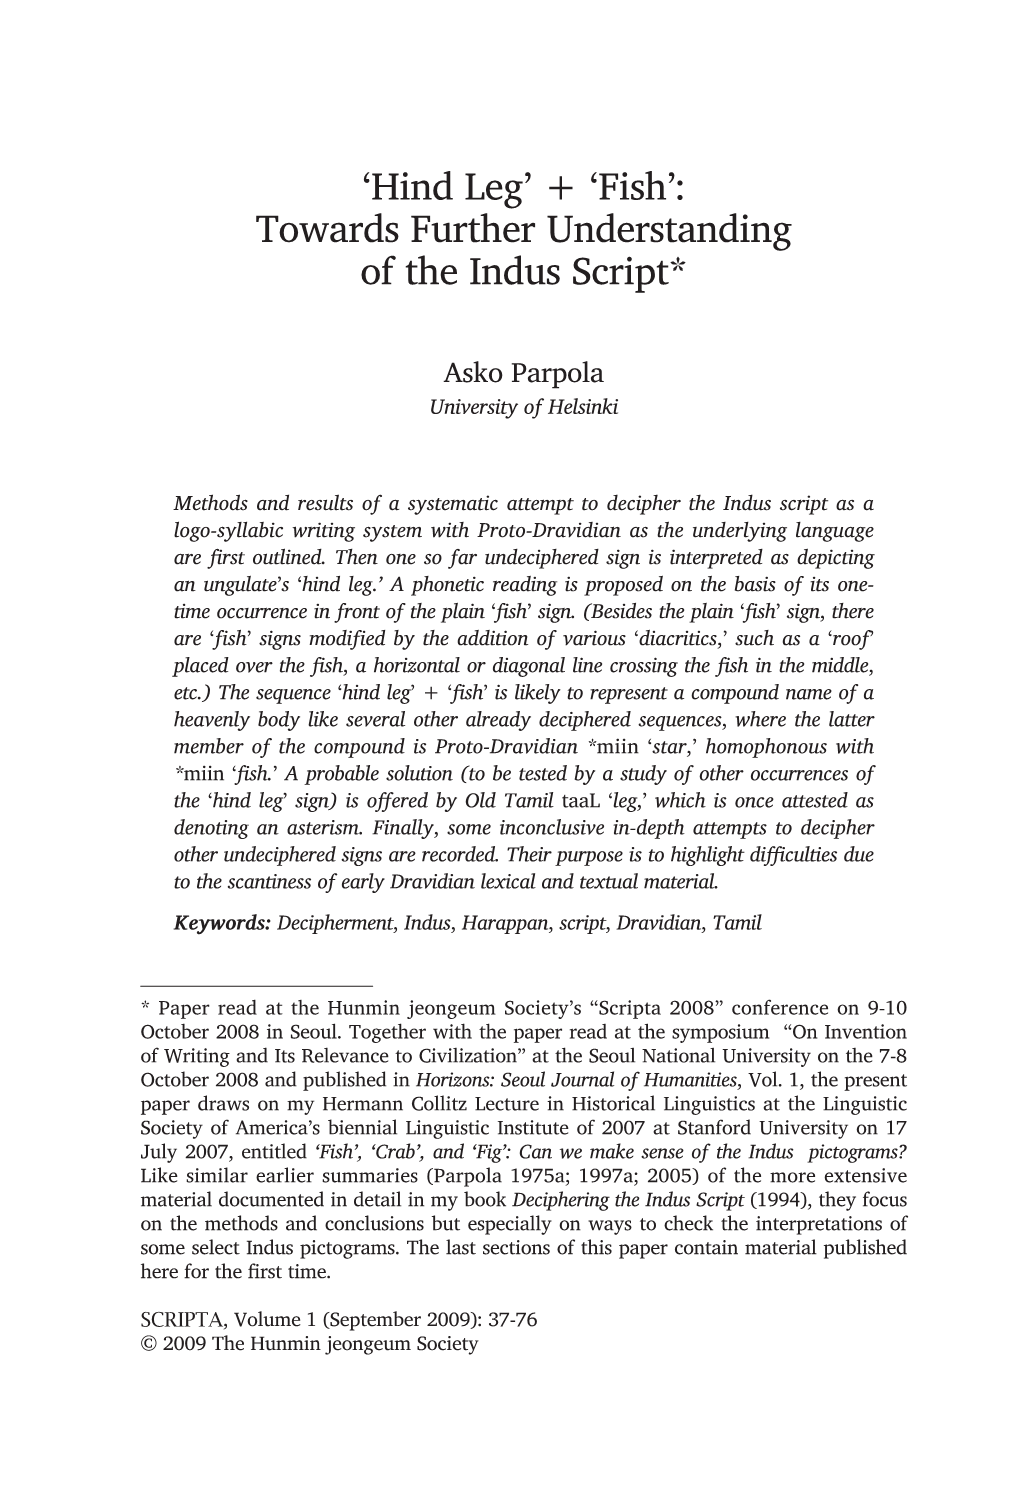 Towards Further Understanding of the Indus Script*